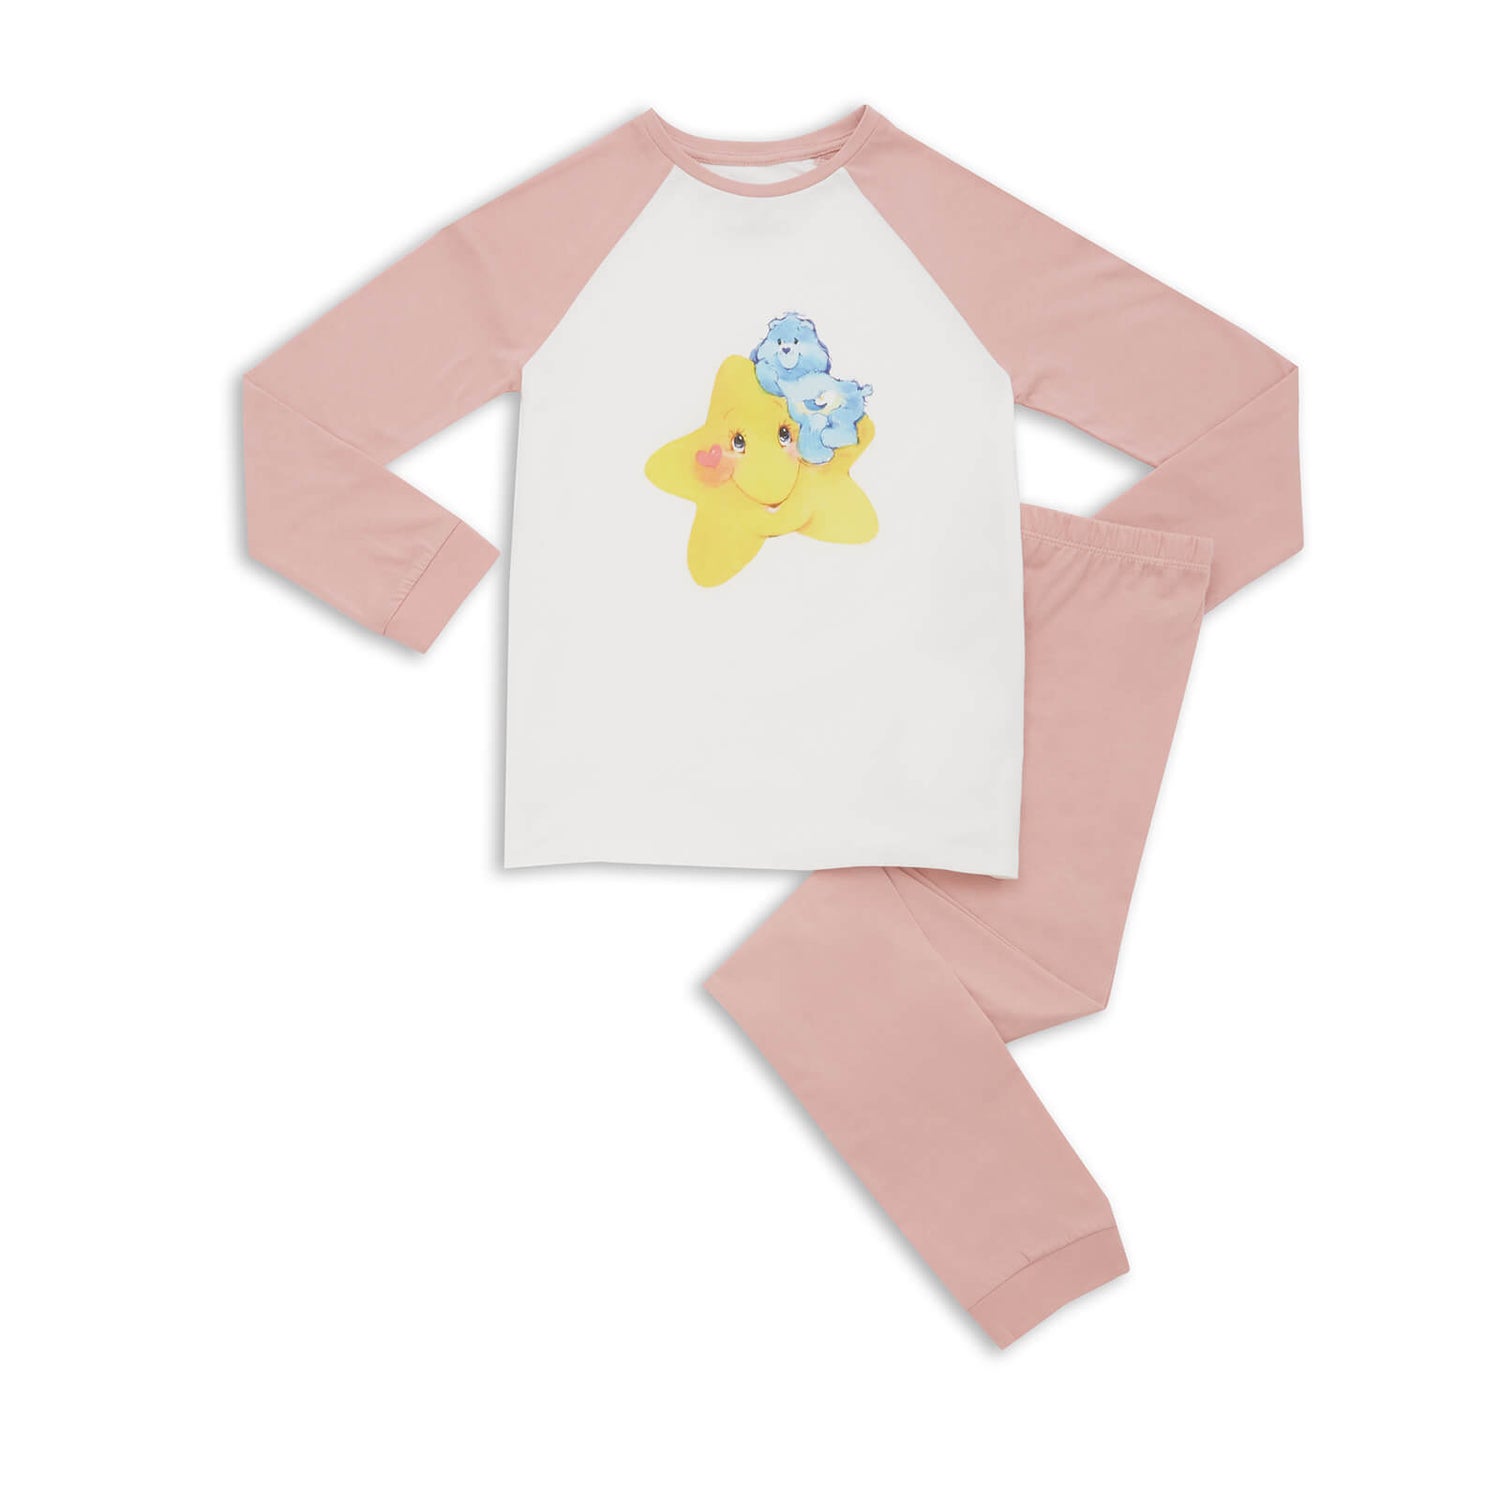 Care Bears Night Star Kids' Pyjamas - Pink White